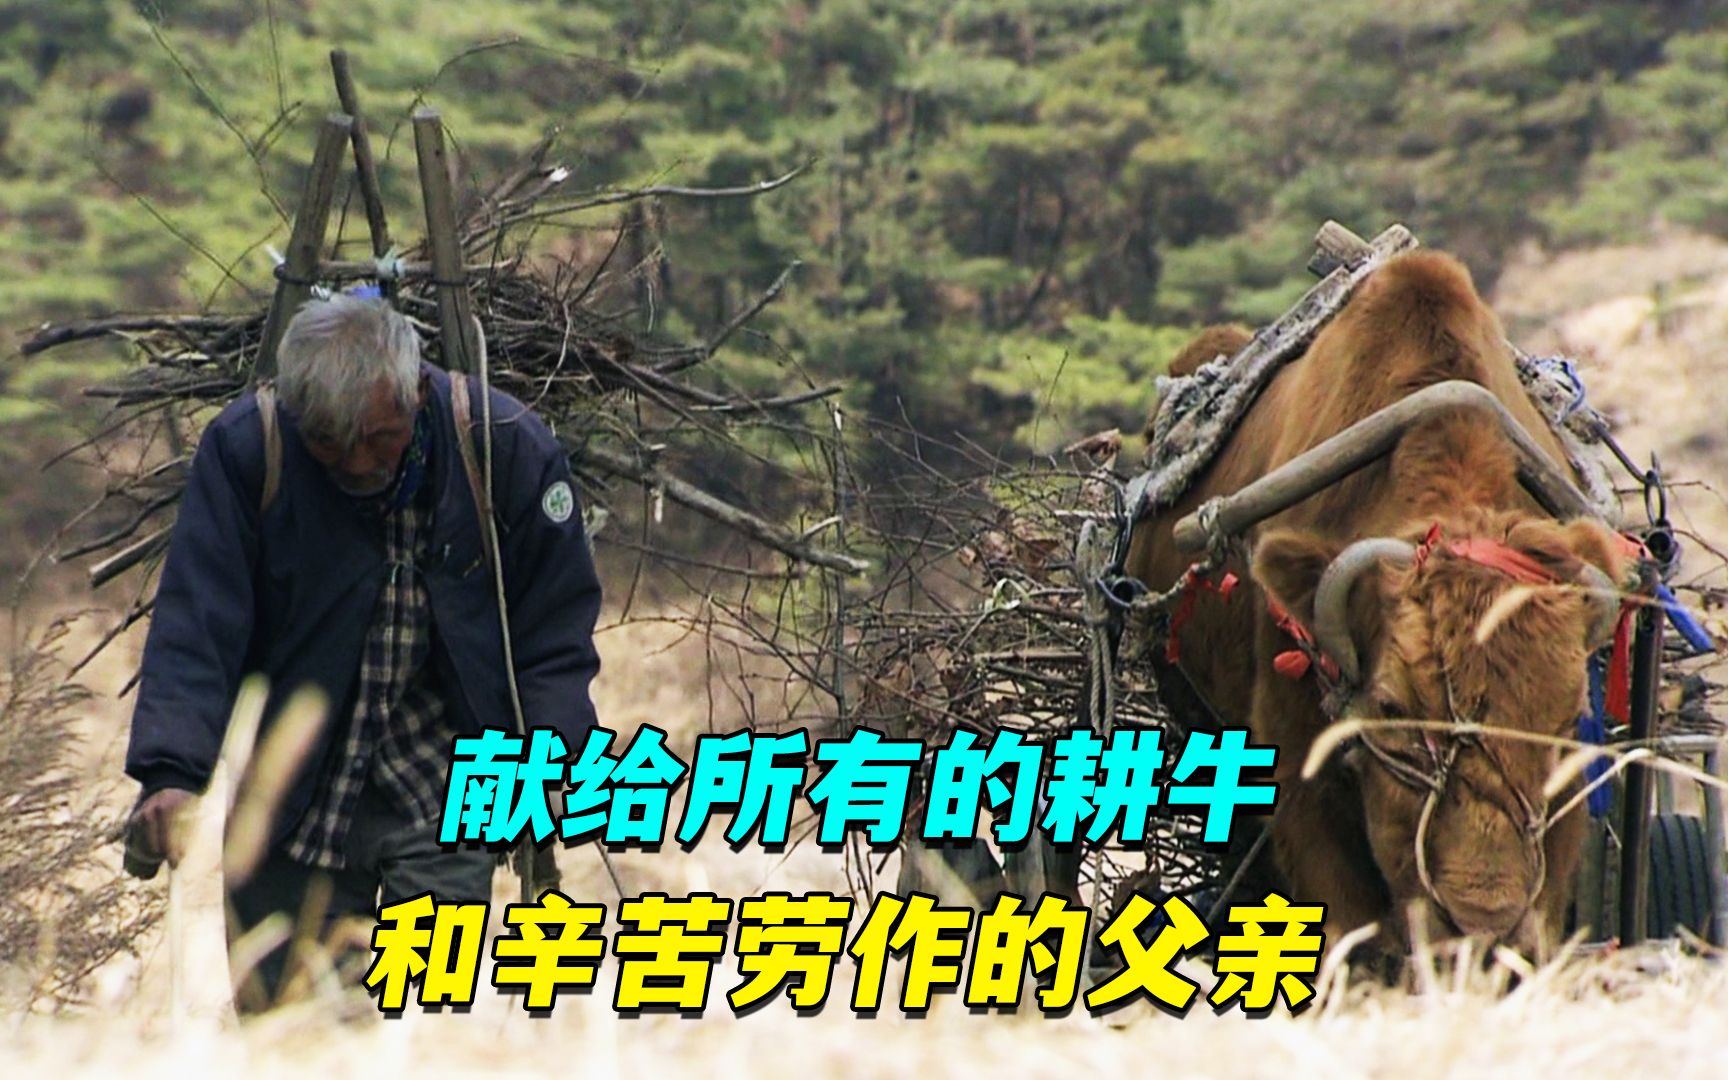 献给一生艰苦劳作的耕牛和父亲,纪录片《牛铃之声》